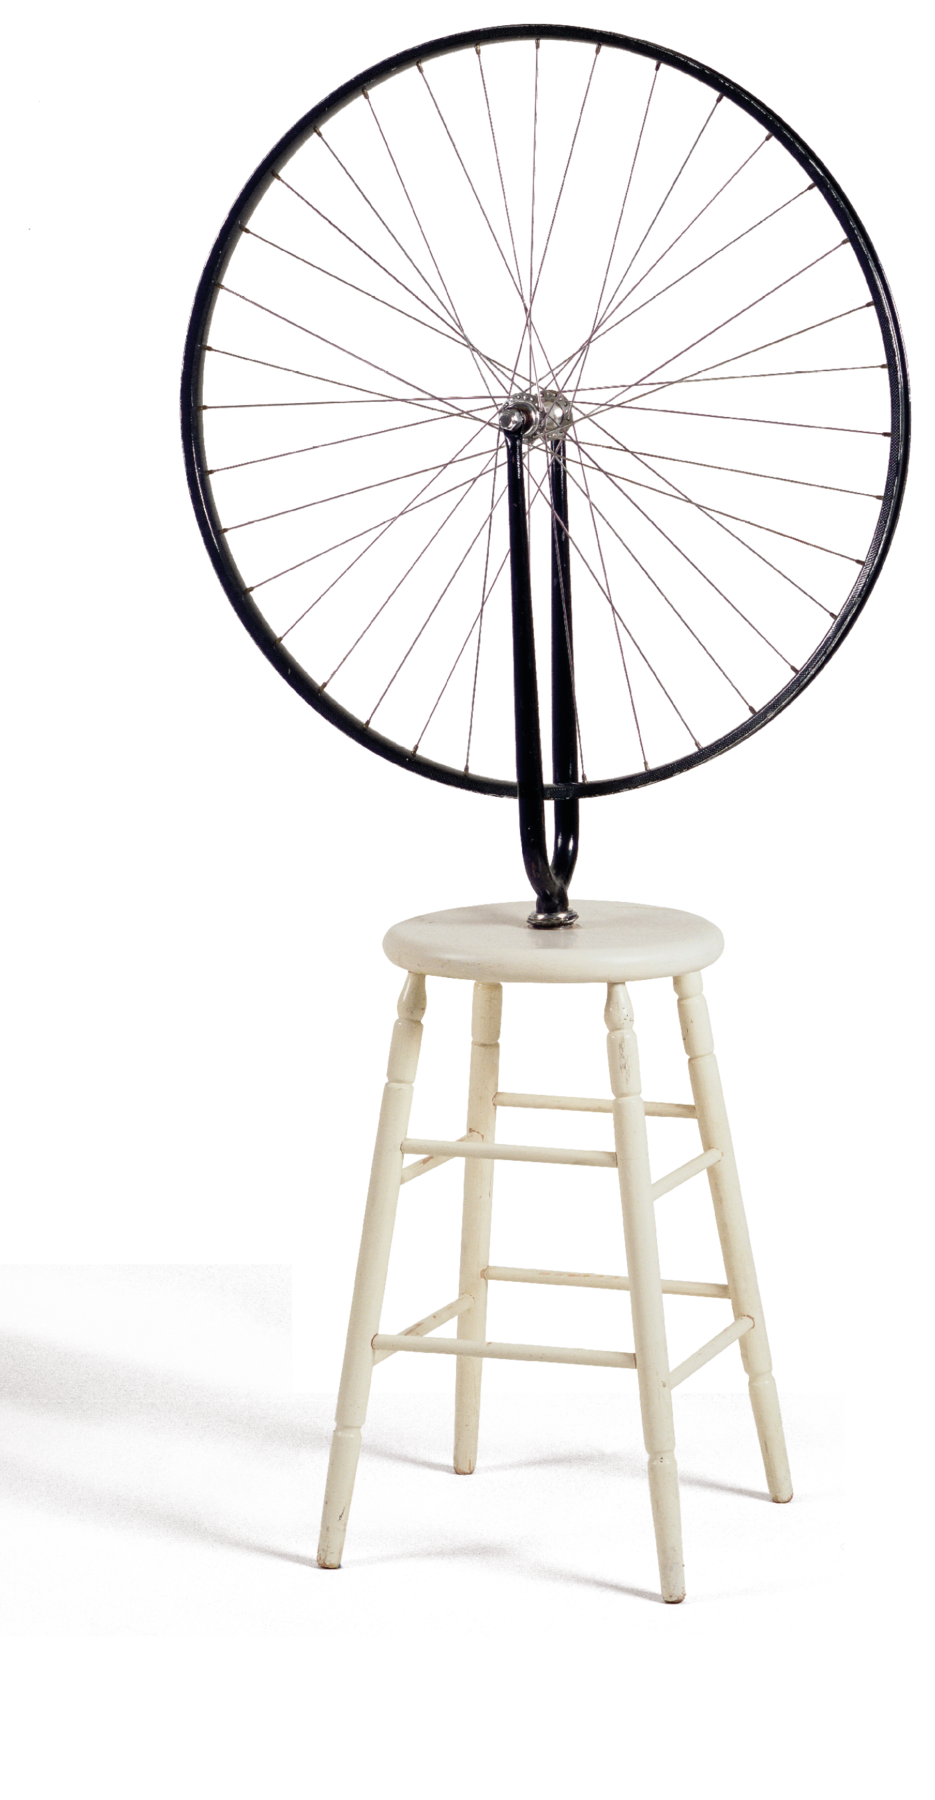 Escultura. Sobre uma banqueta branca, há uma roda de bicicleta preta apoiada num suporte sobre o assento.